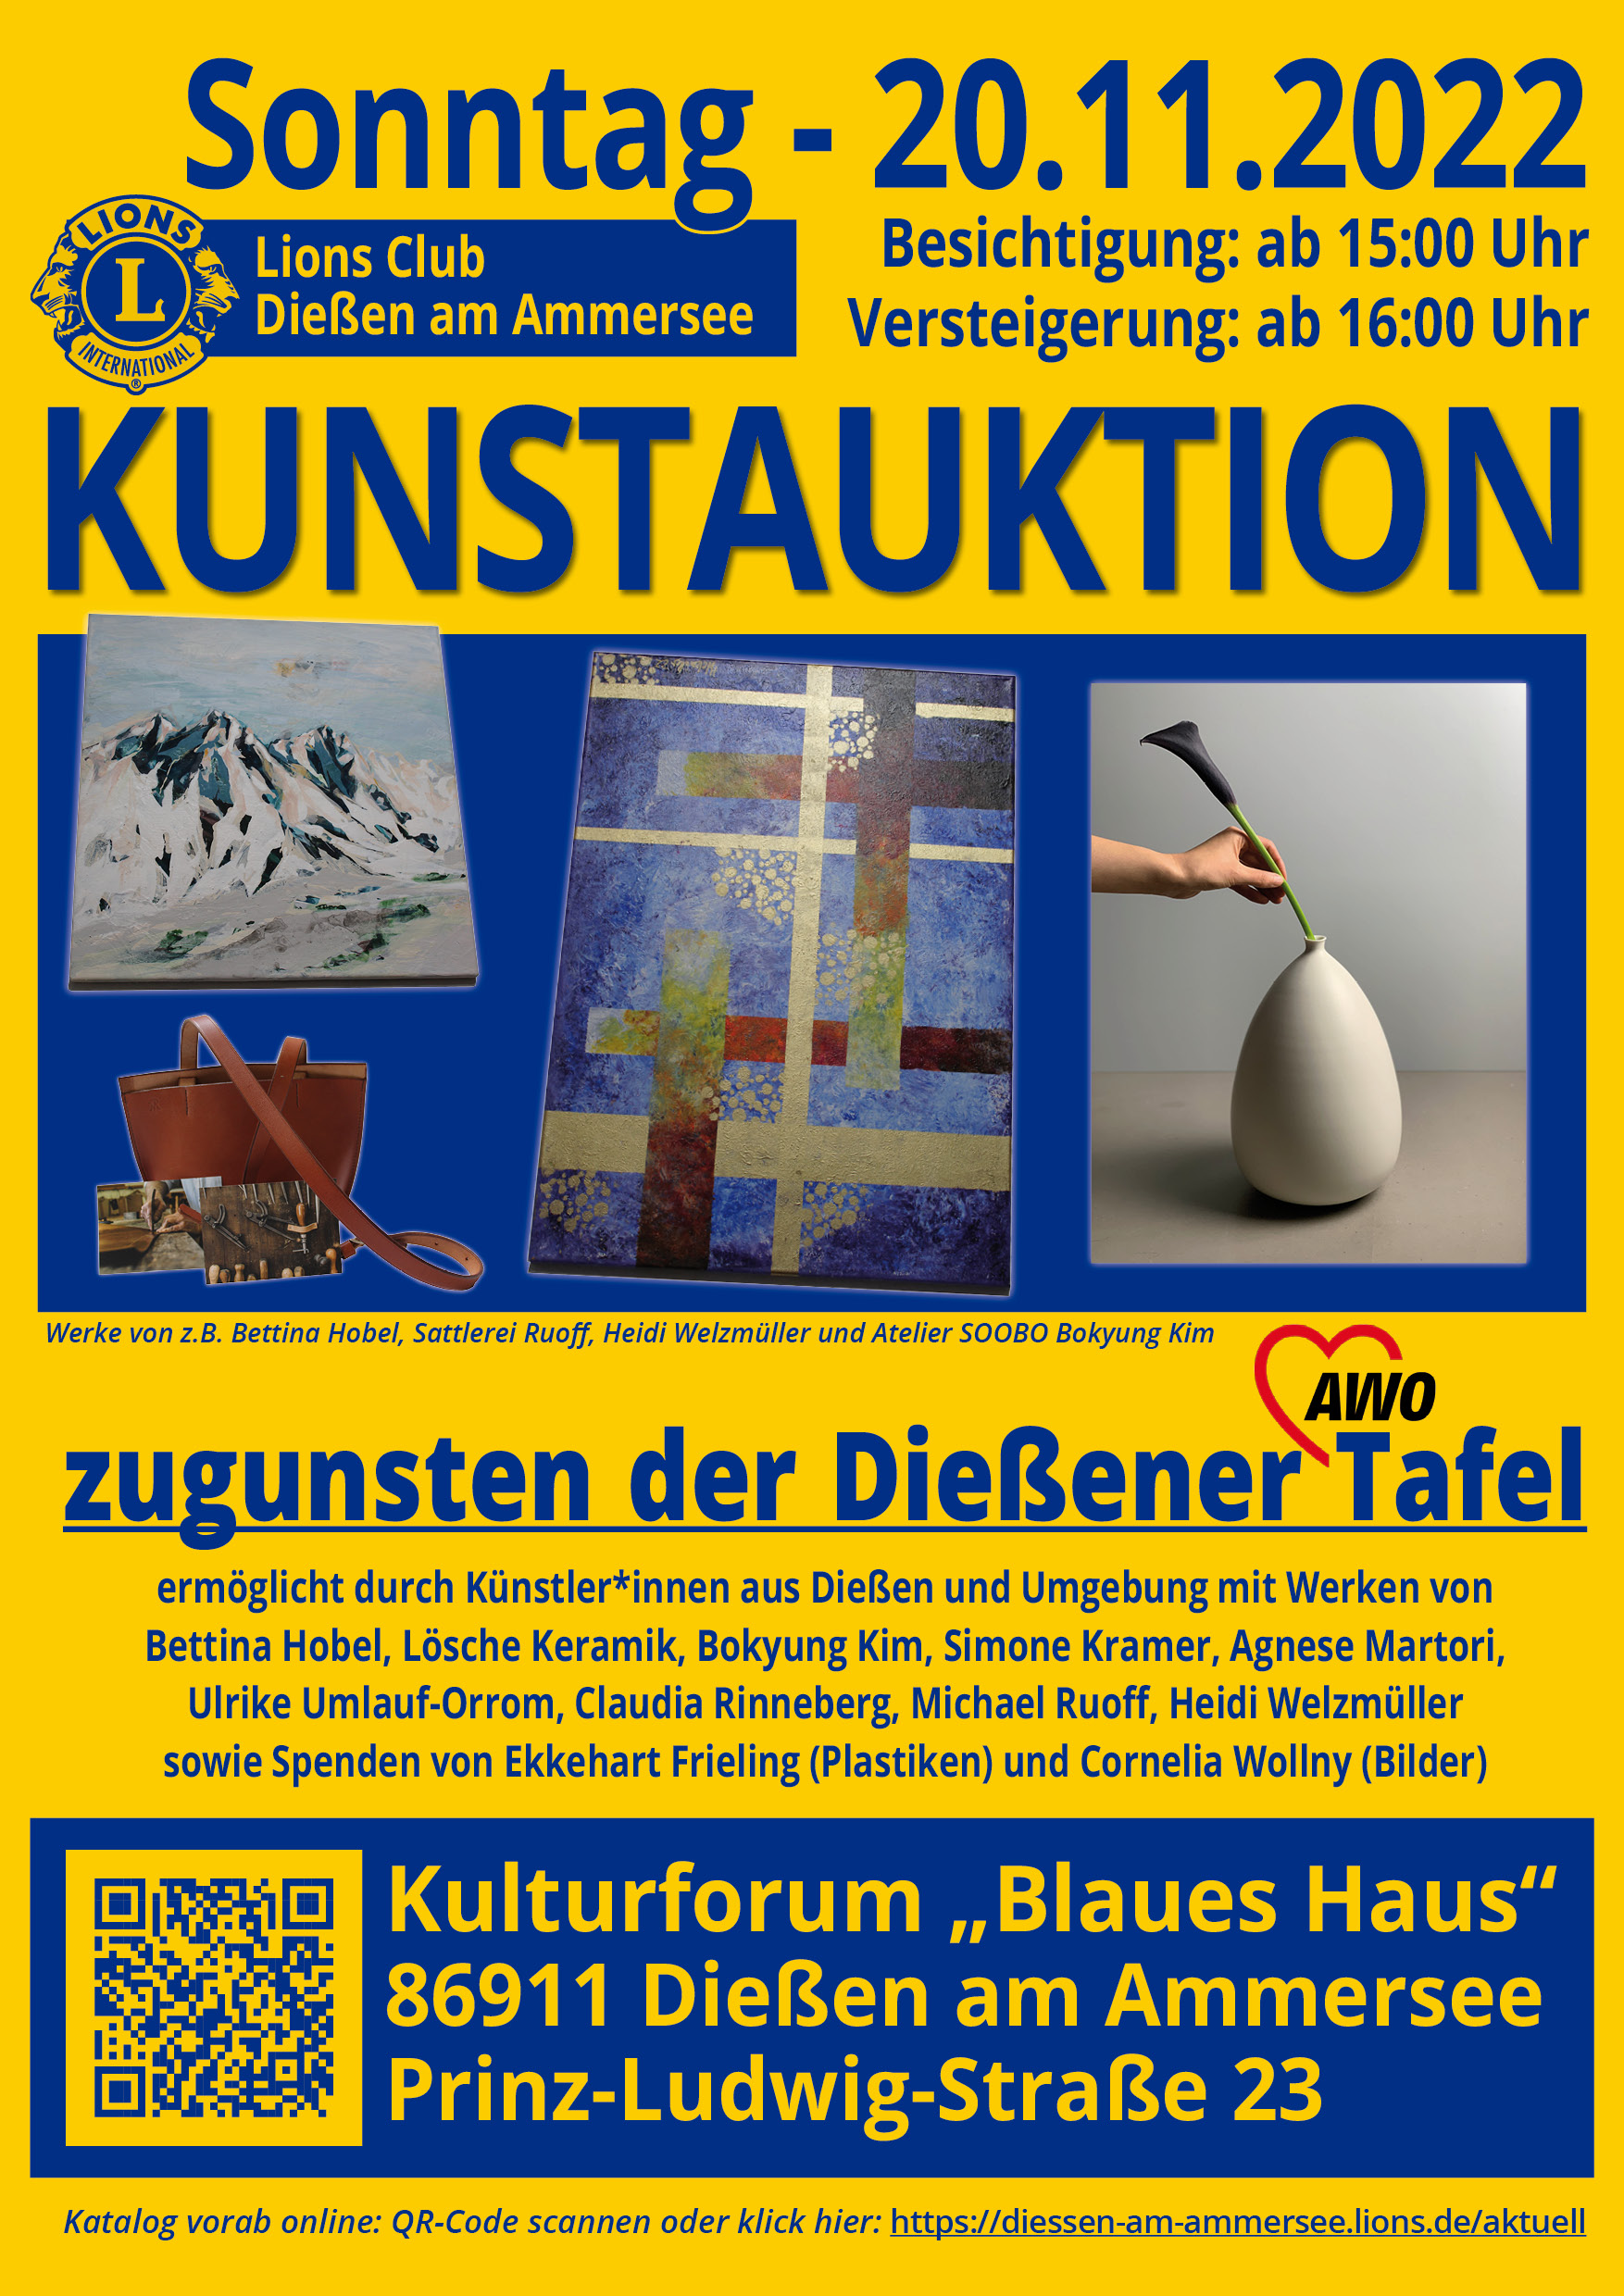 Save the Date - Kunst-Auktion zugunsten der Dießener Tafel am 20.11.2022